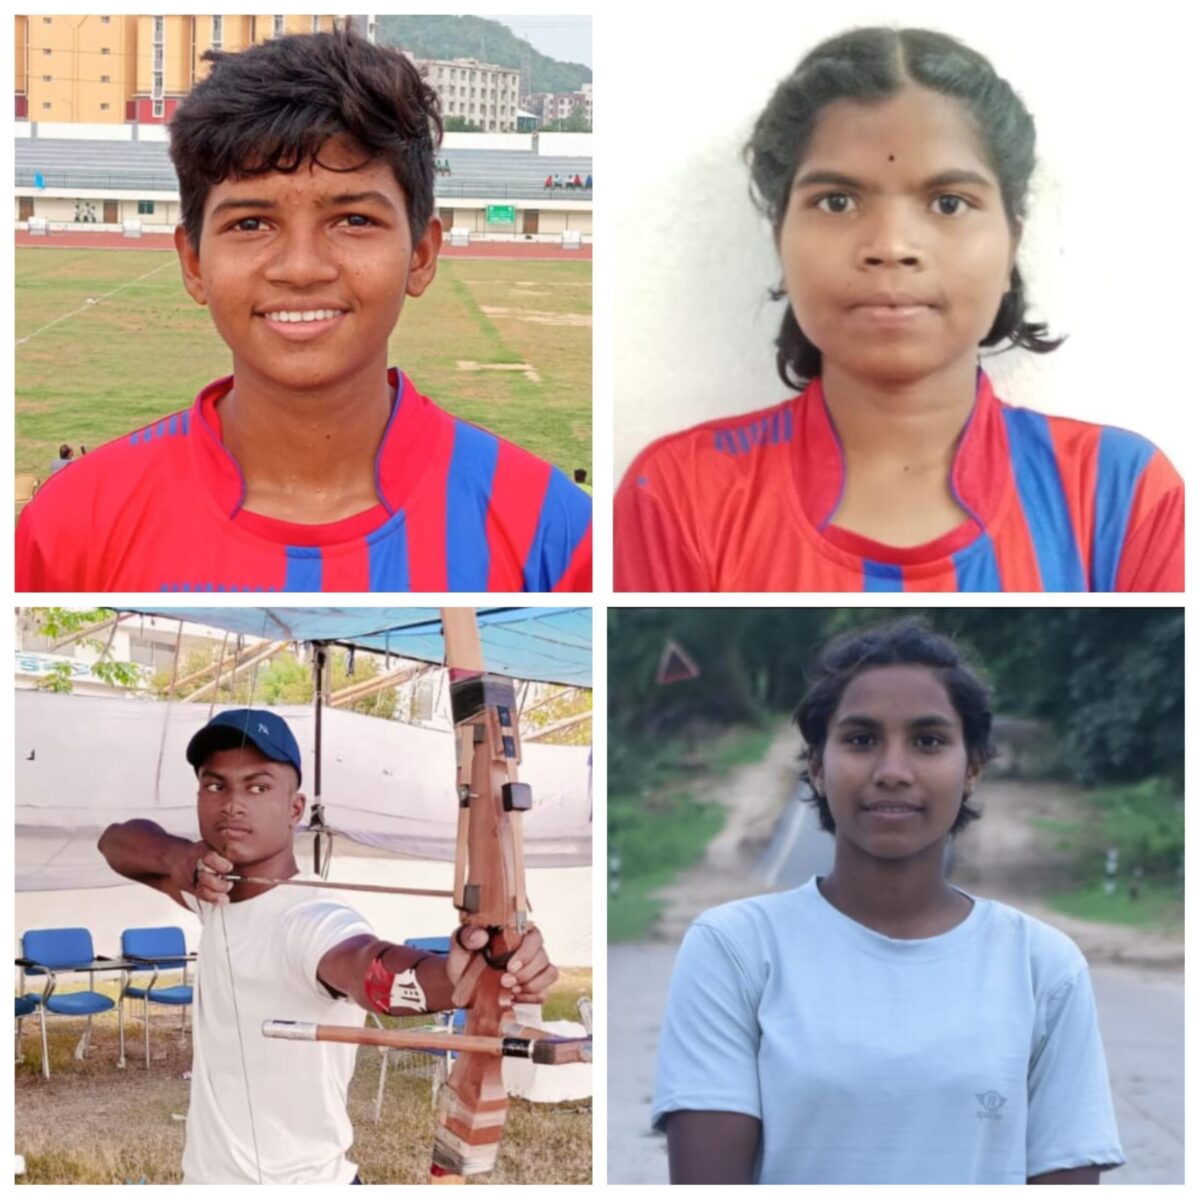 <em>प्रथम खेलो इंडिया जनजाति खेल राष्ट्रीय प्रतियोगिता में आवासीय तीरंदाजी तथा एथलेटिक अकादमी के खिलाड़ियों ने जीते पदक, मुख्यमंत्री तथा खेल मंत्री ने खिलाड़ियों को दी बधाई</em>